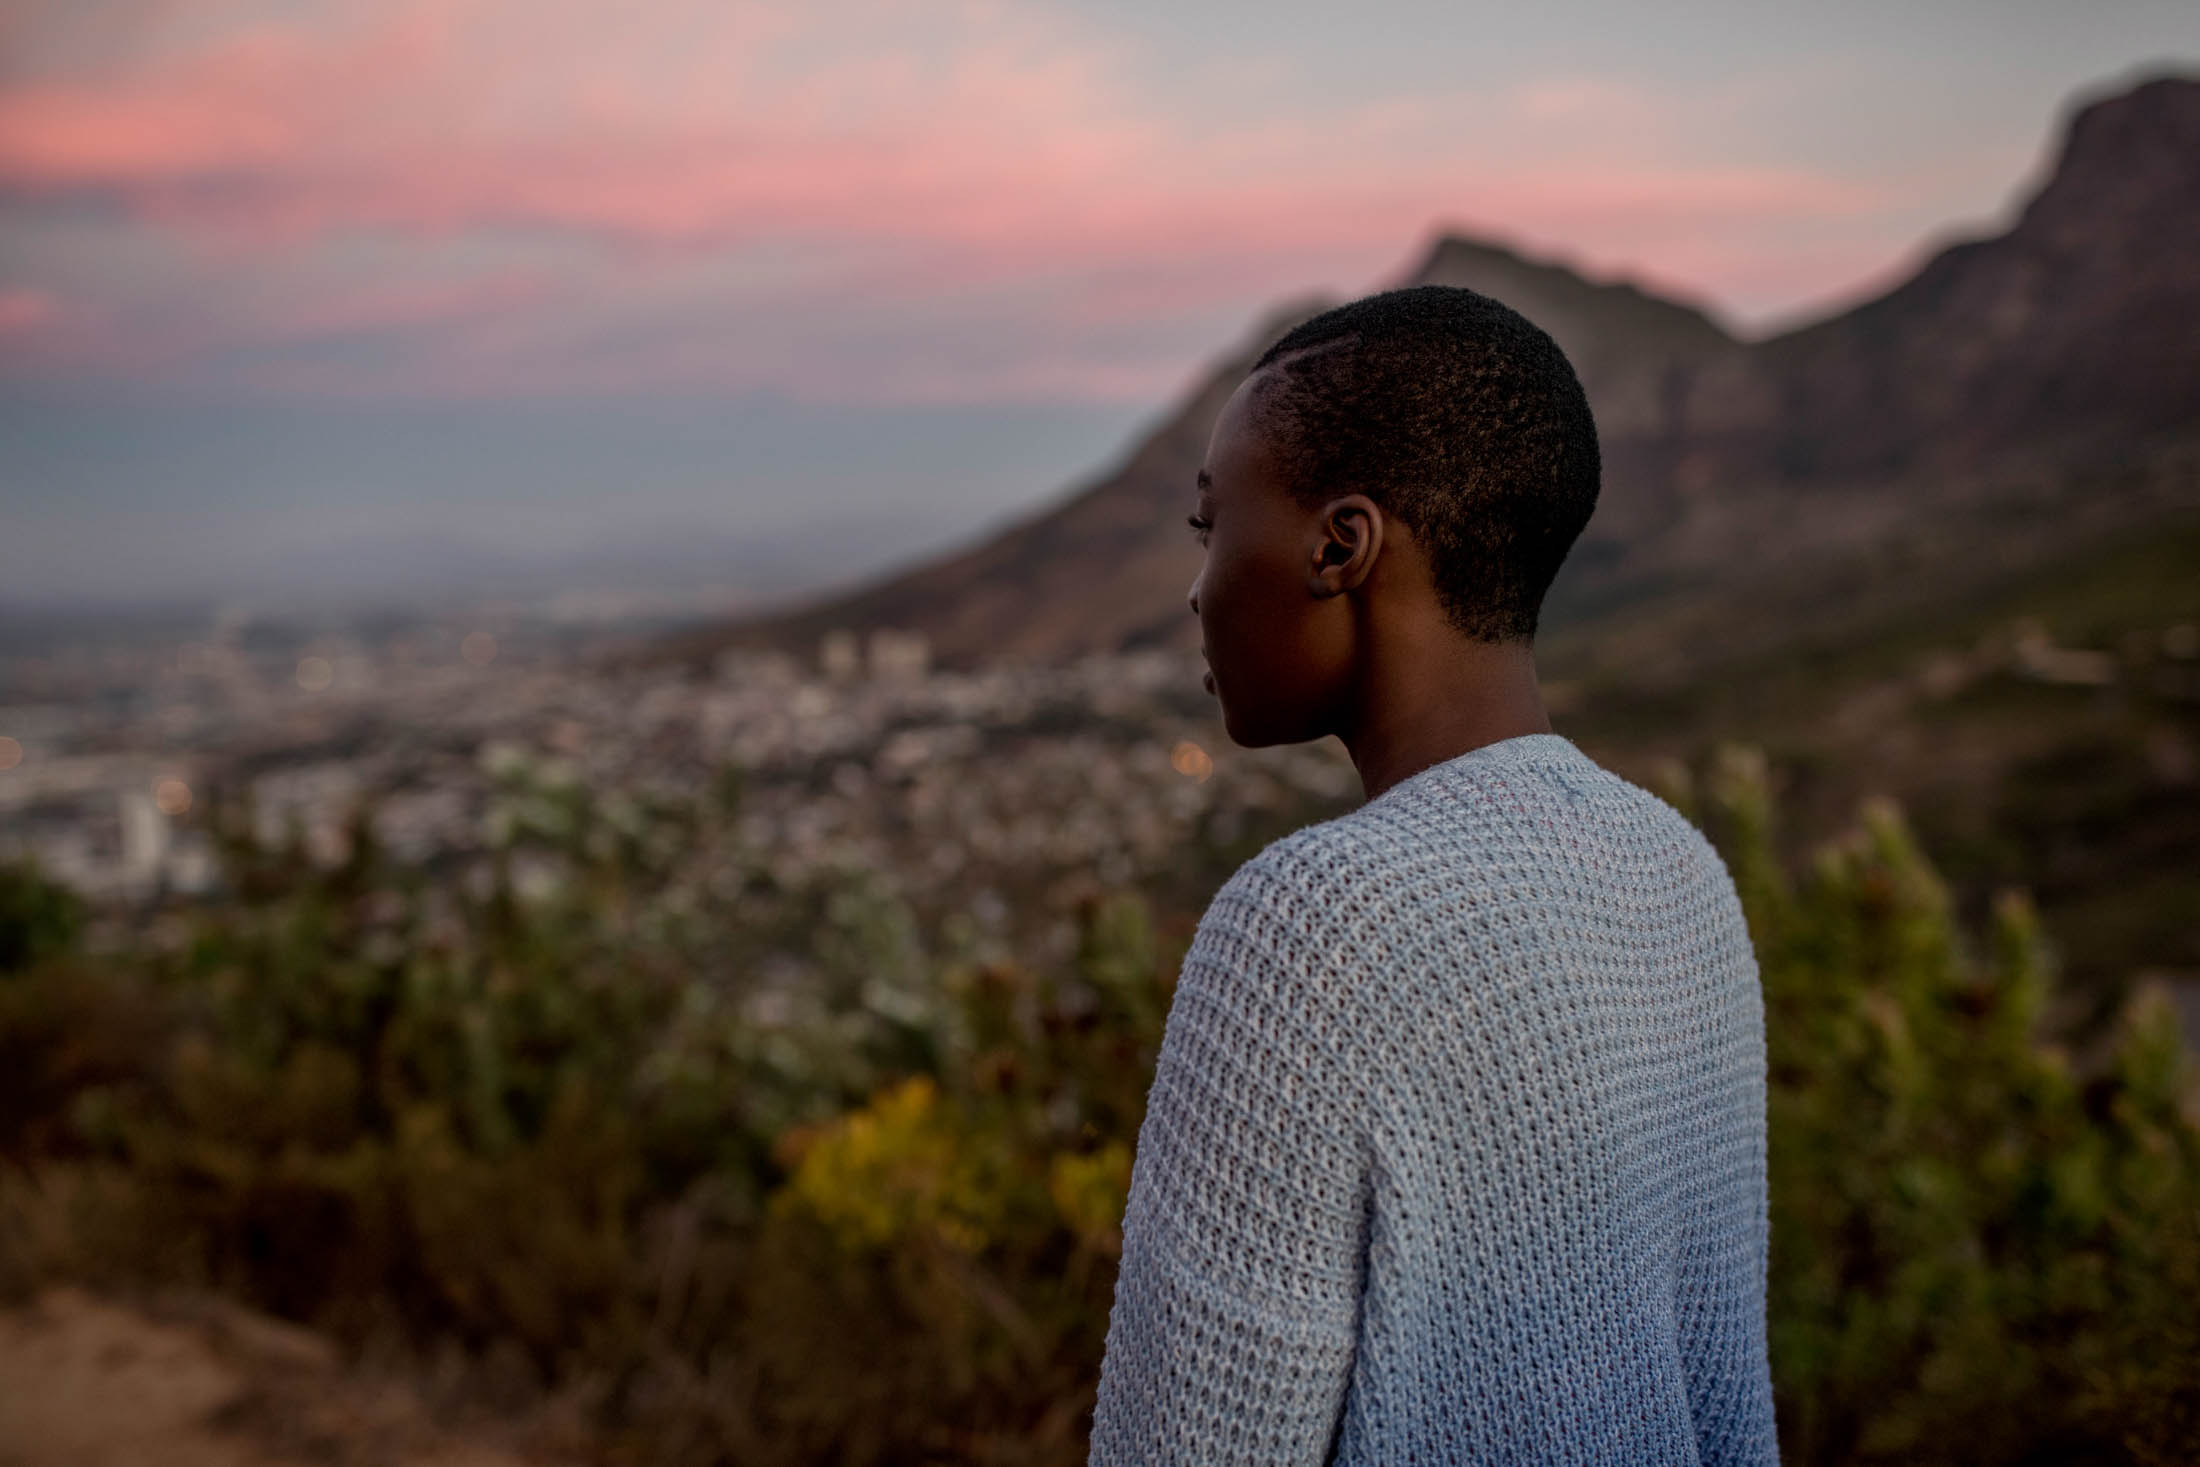 Eine Person blickt bei Sonnenuntergang auf eine Stadtlandschaft mit Bergen im Hintergrund. Der Himmel zeigt Rosa- und Blautöne. © Fotografie Tomas Rodriguez